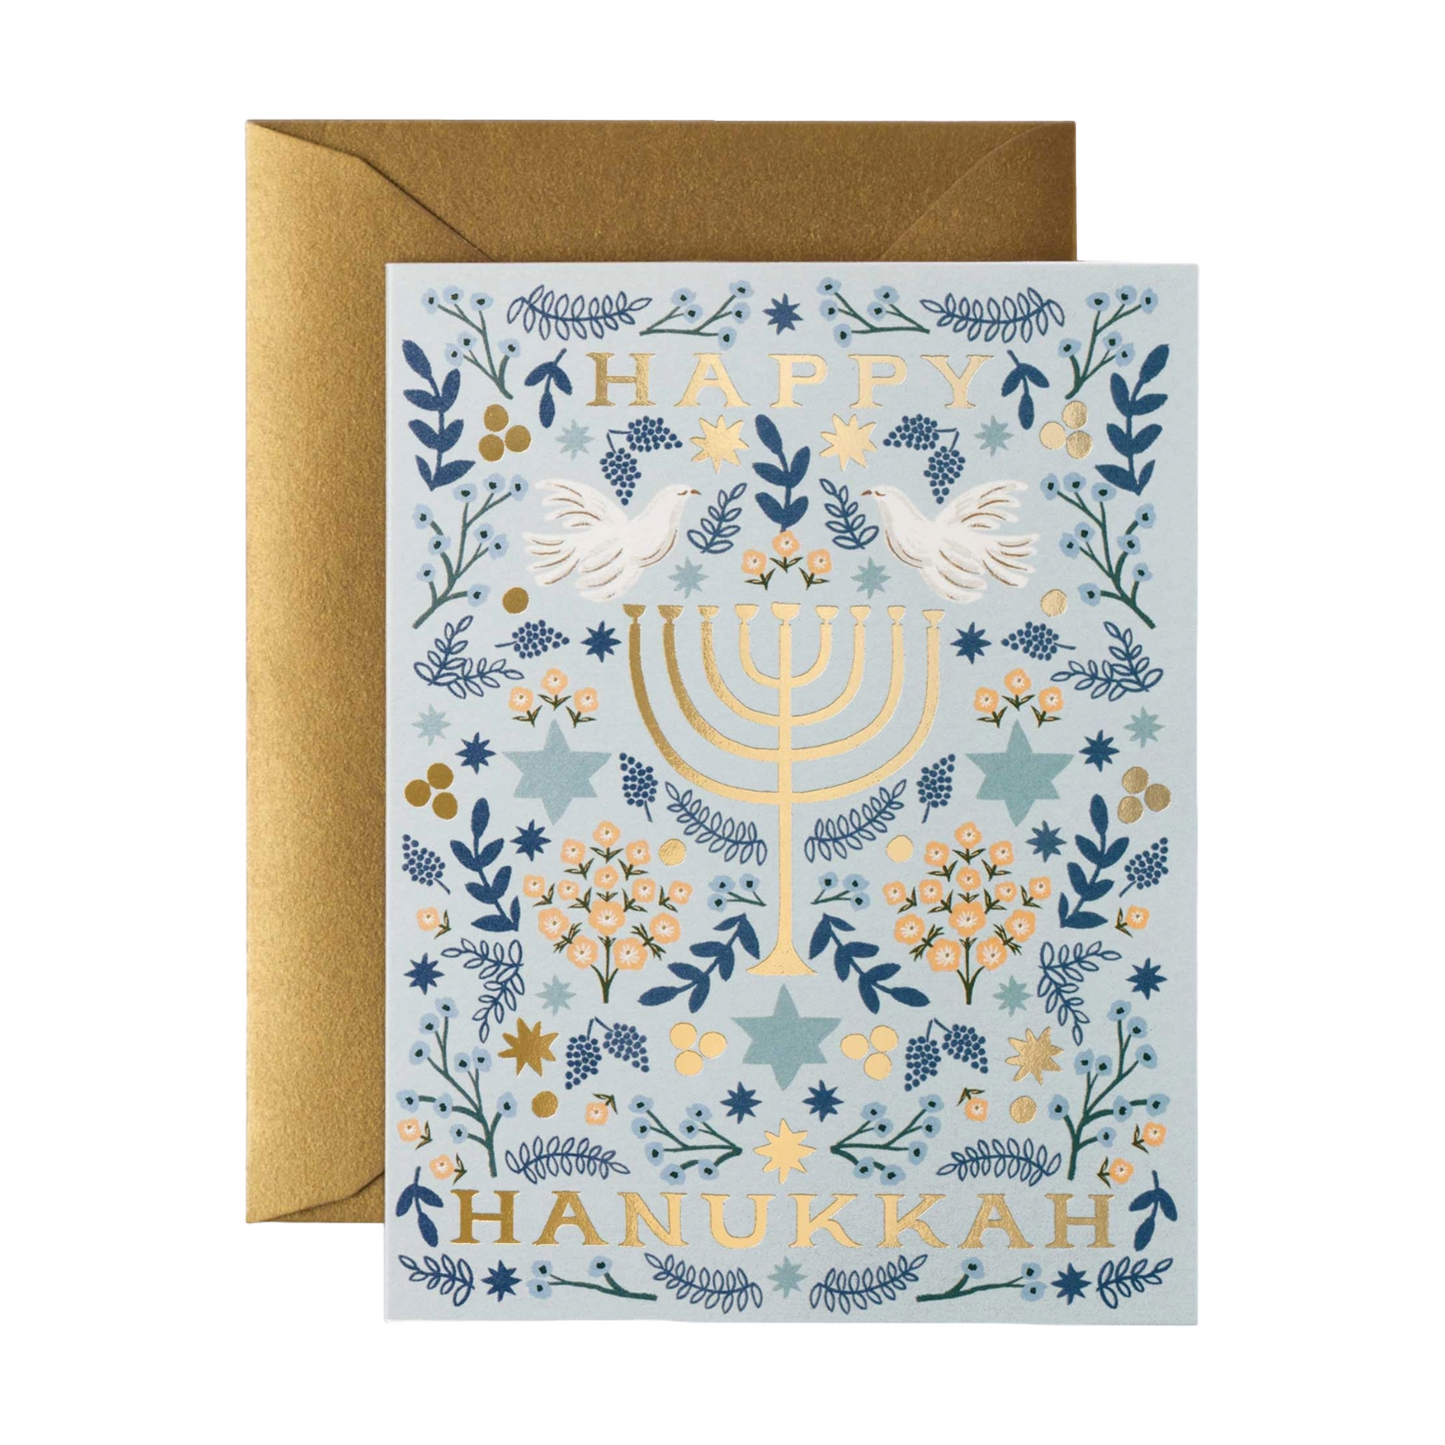 Hanukkah Menorah Card by Rifle Paper Co.